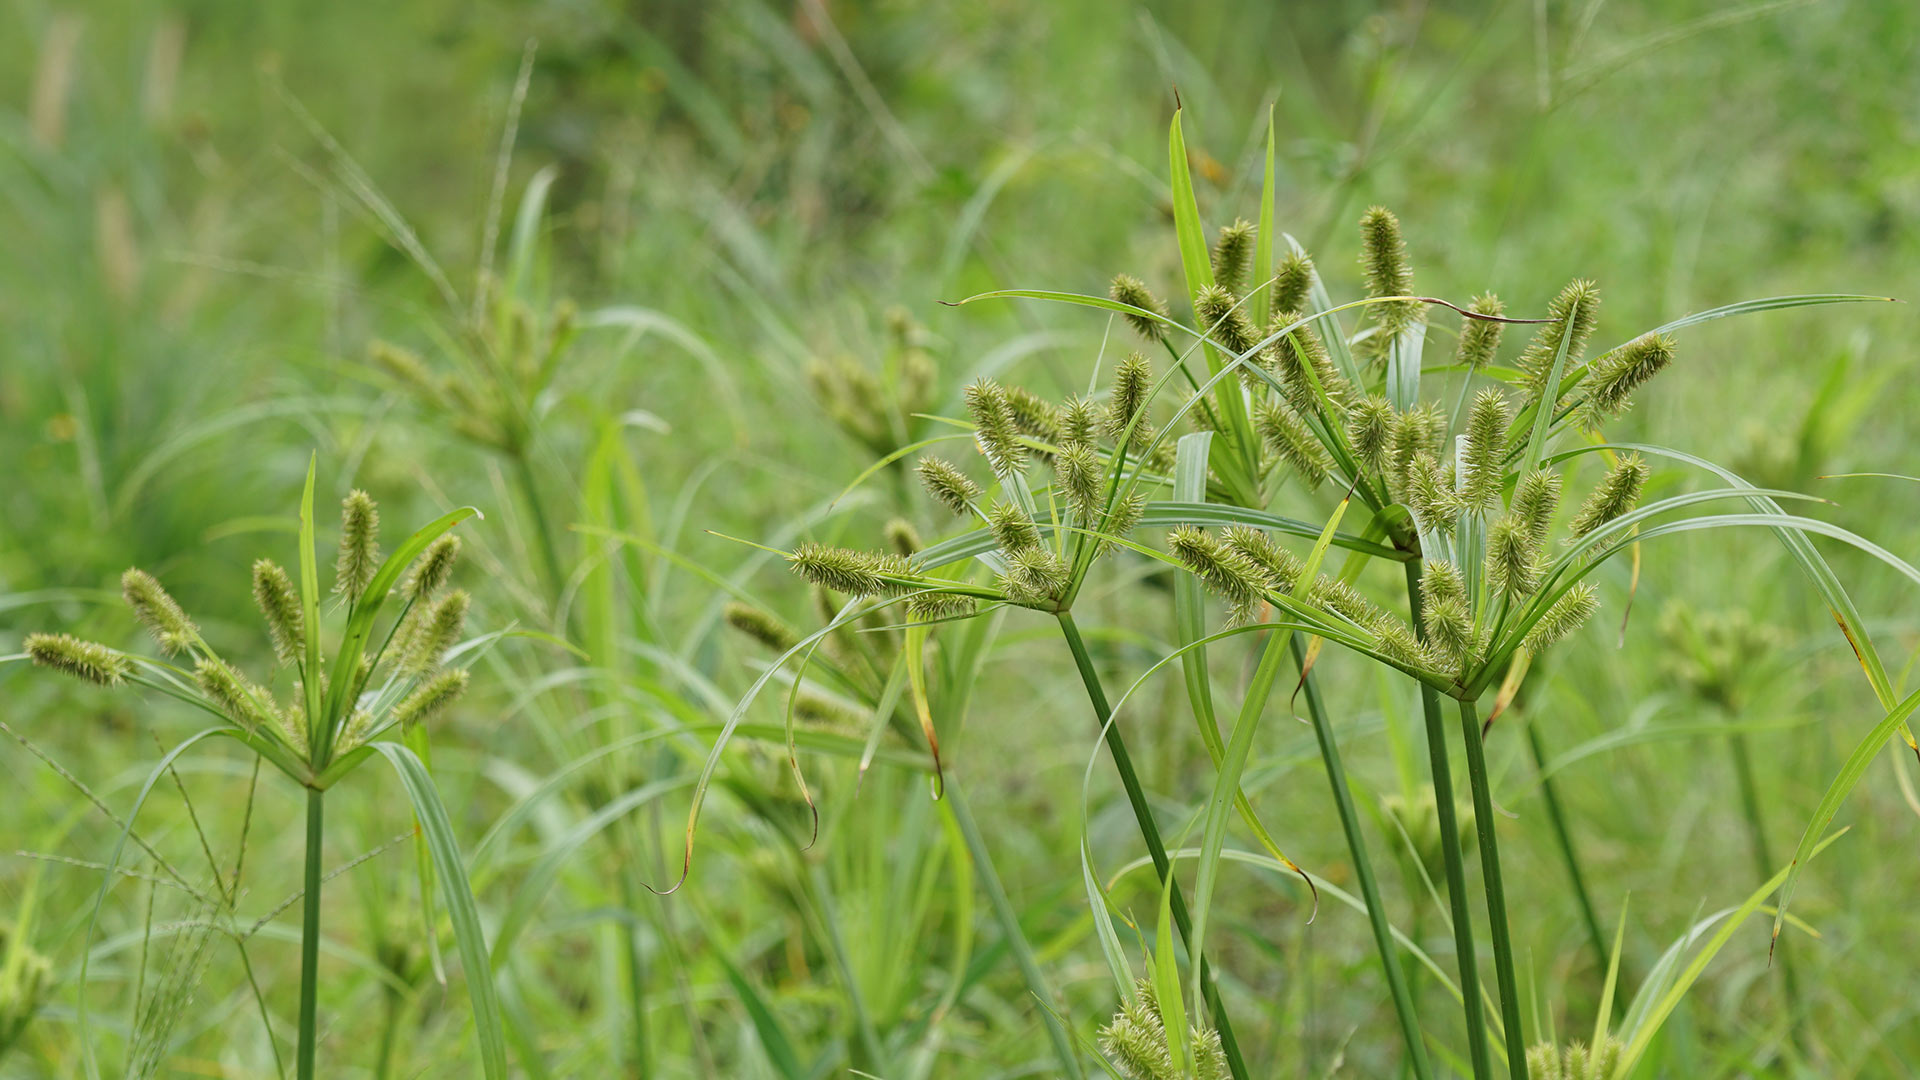 Nutsedge weeds growing in lawn in Dallas, TX.